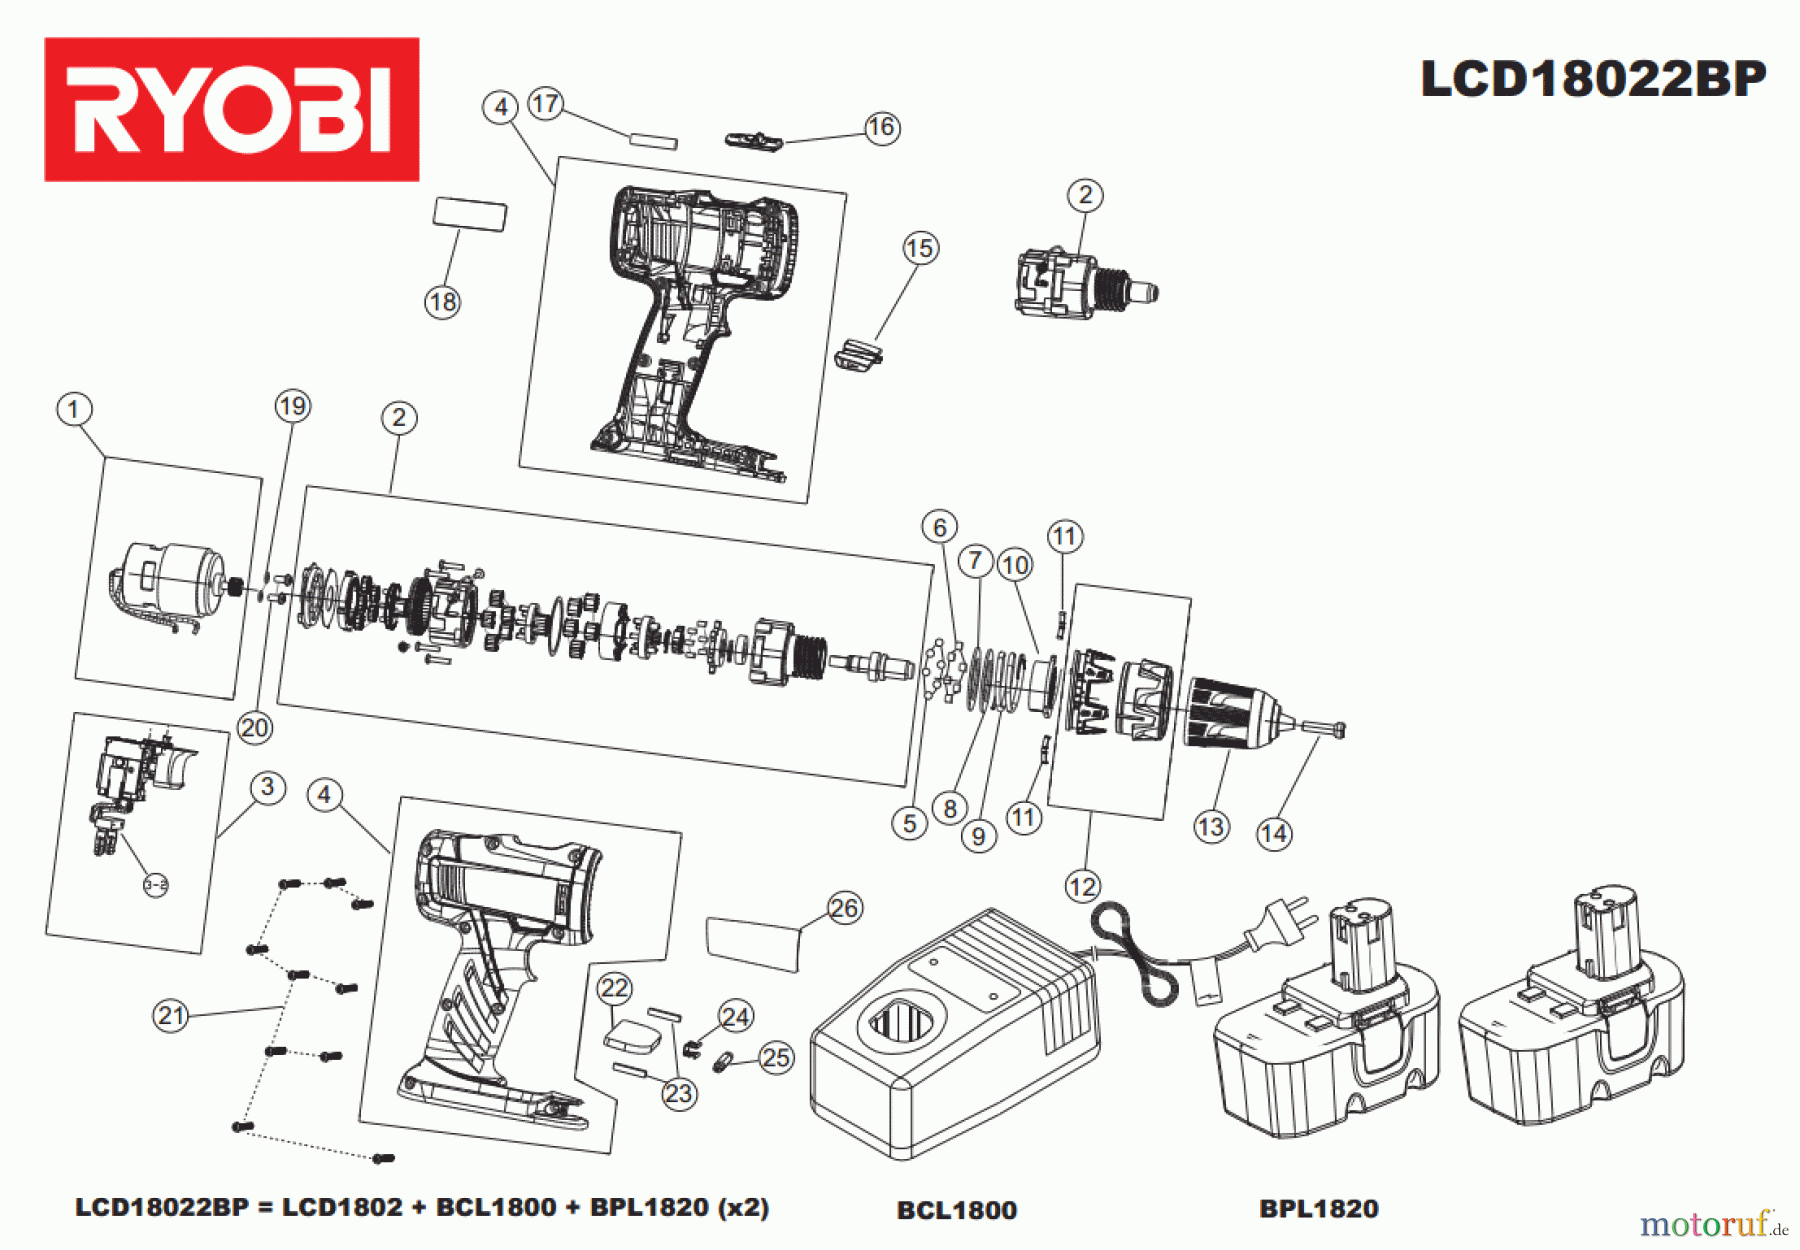  Ryobi (Schlag-)Bohrschrauber Bohrschrauber LCD18022BP Seite 1